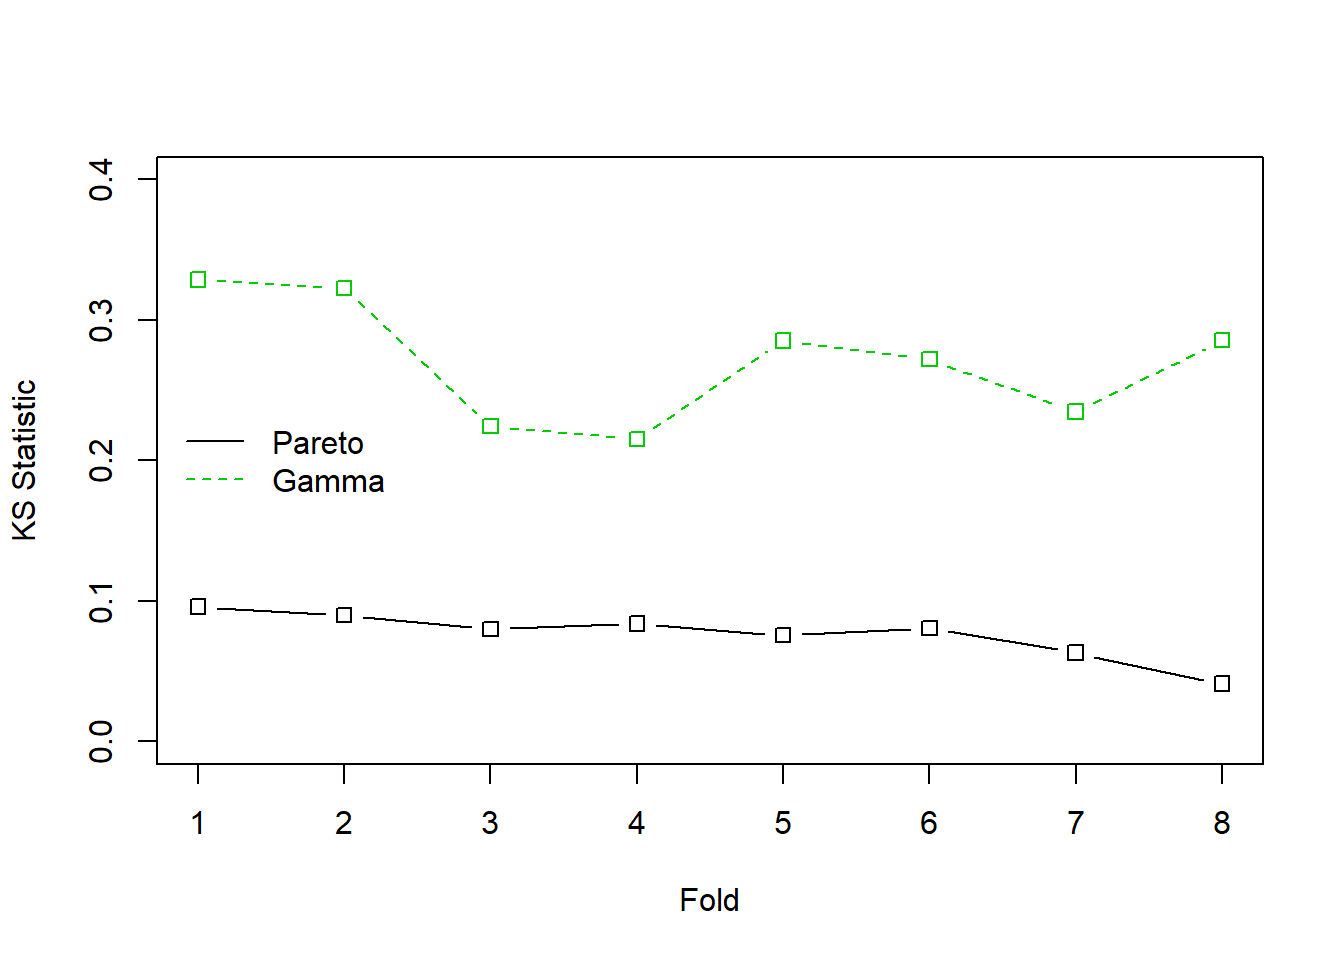 Estadísticos de Kolmogorov-Smirnov (KS) con validación cruzada para los datos de siniestros del fondo de propiedad. La línea continua negra corresponde a la distribución de Pareto, la línea verde discontinua corresponde a la gamma. El estadístico KS mide la mayor desviación entre la distribución ajustada y la empírica para cada uno de los 8 grupos, o folds, de los datos seleccionados aleatoriamente.